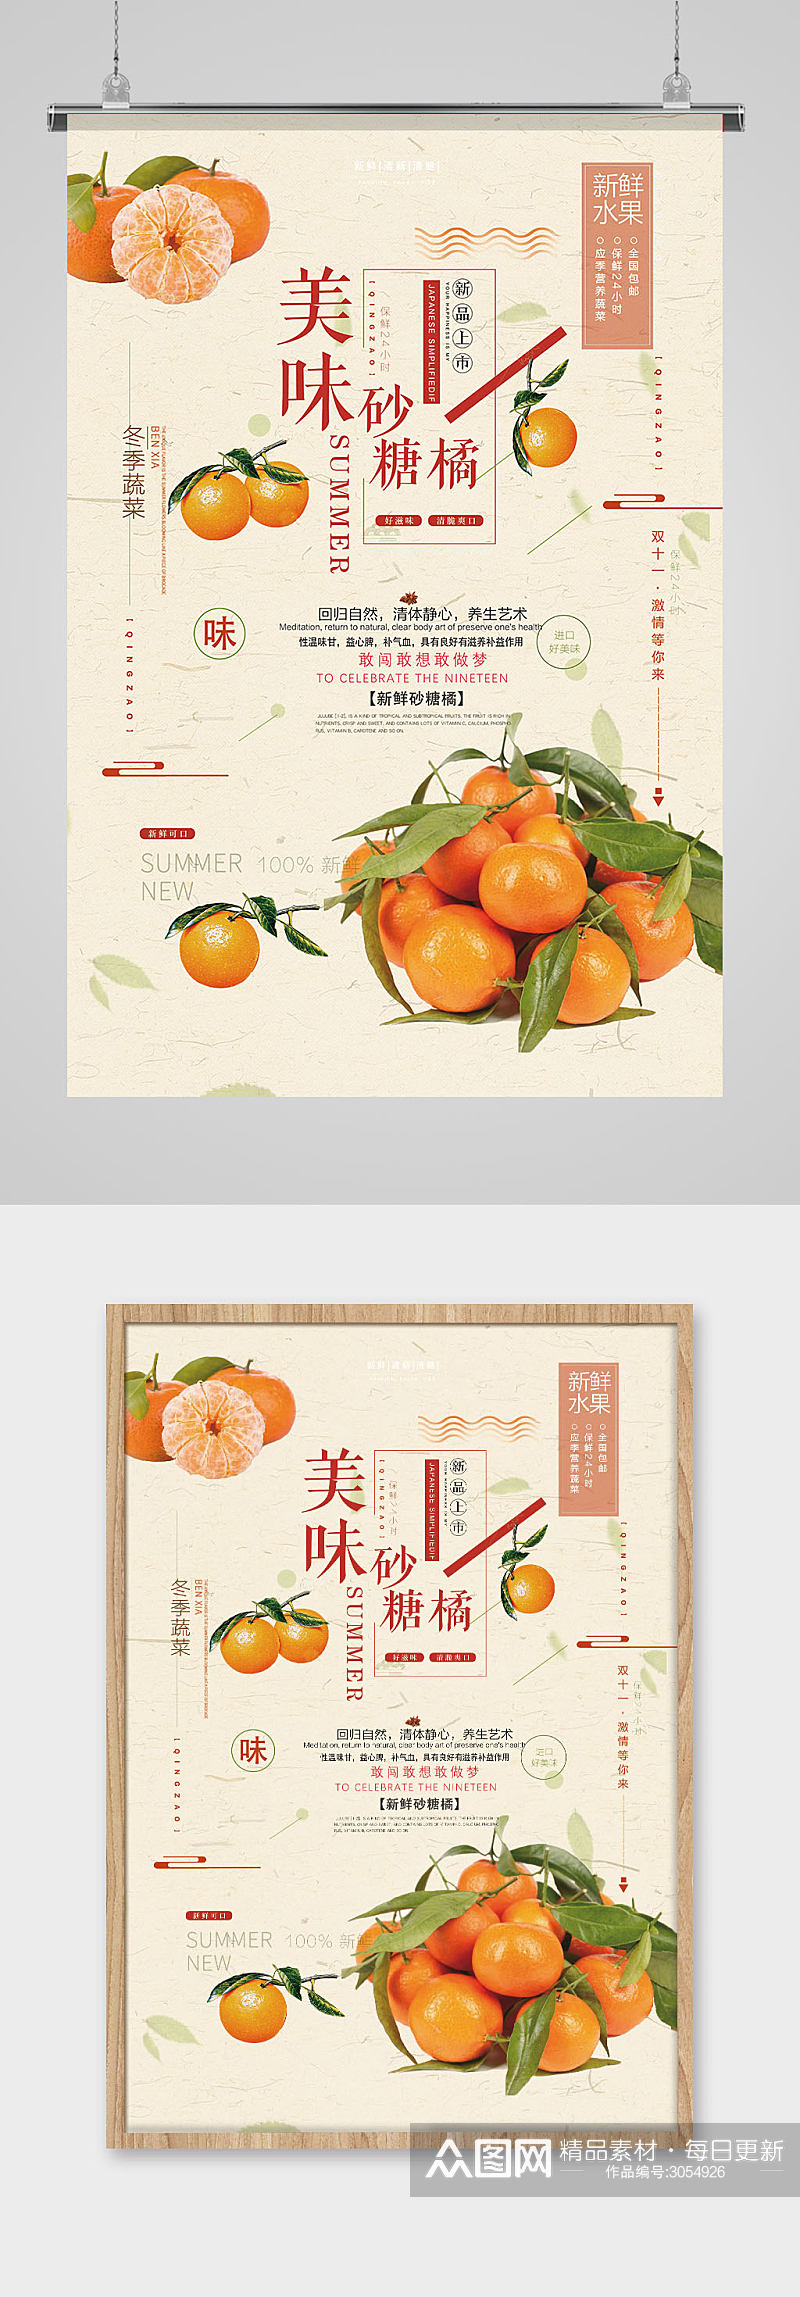 活力橙色美味砂糖橘子新鲜水果海报素材